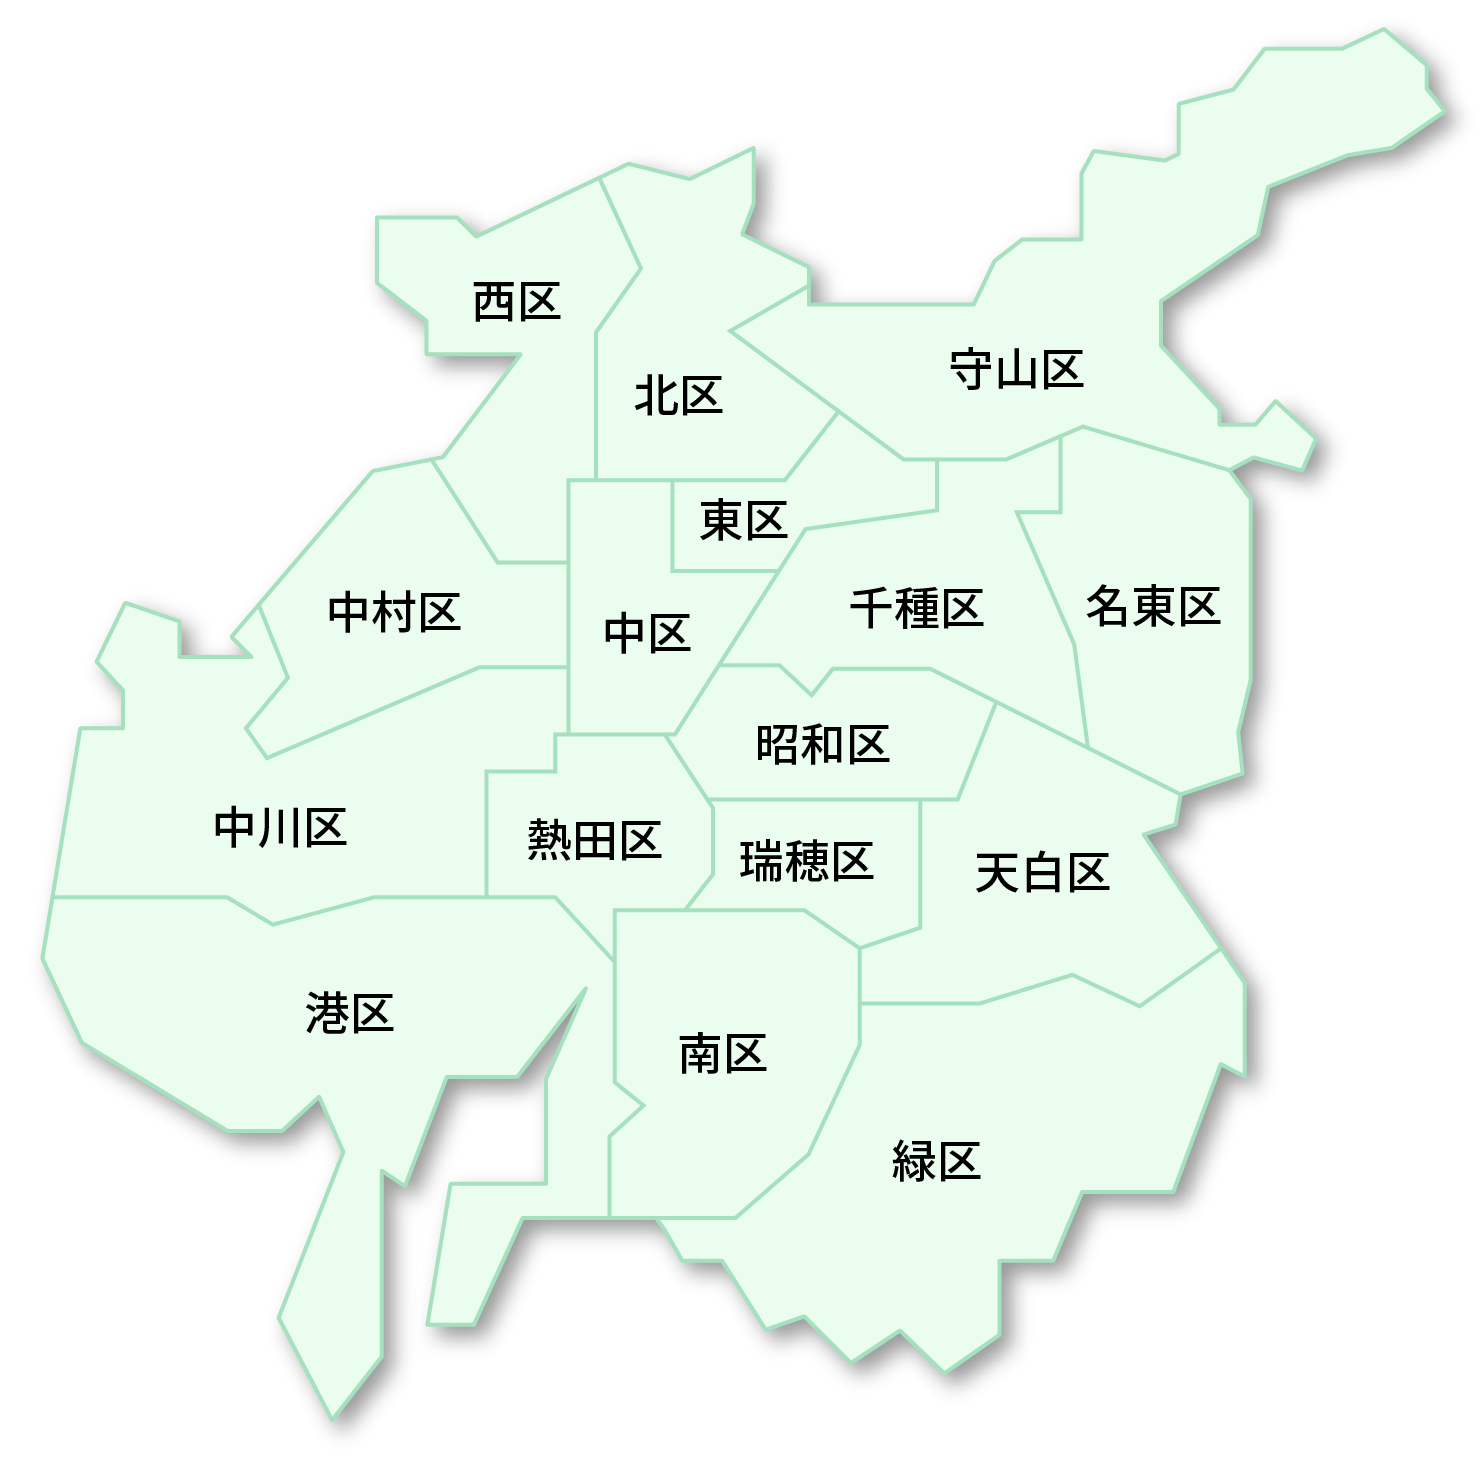 名古屋市地図